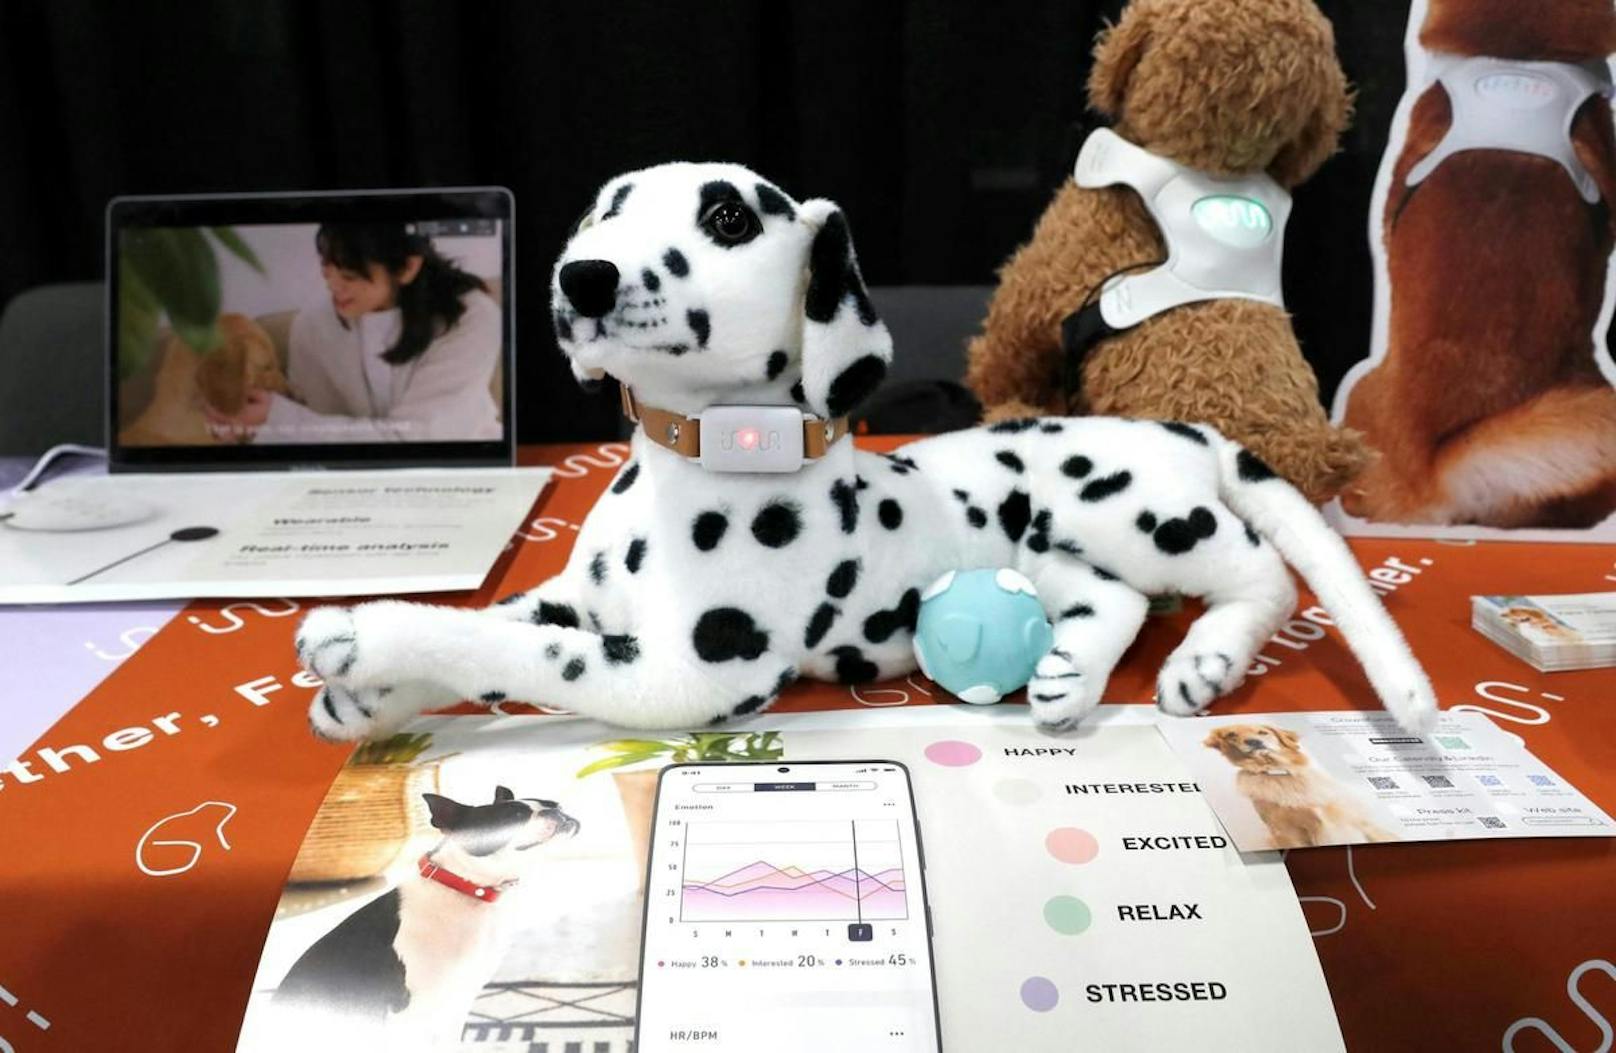 Der Inu-Pathy-Sensor ist für den besten Freund des Menschen gedacht – für Hunde. Er kann deren Herzfrequenz und Aktivitäten messen und genaustens analysieren.